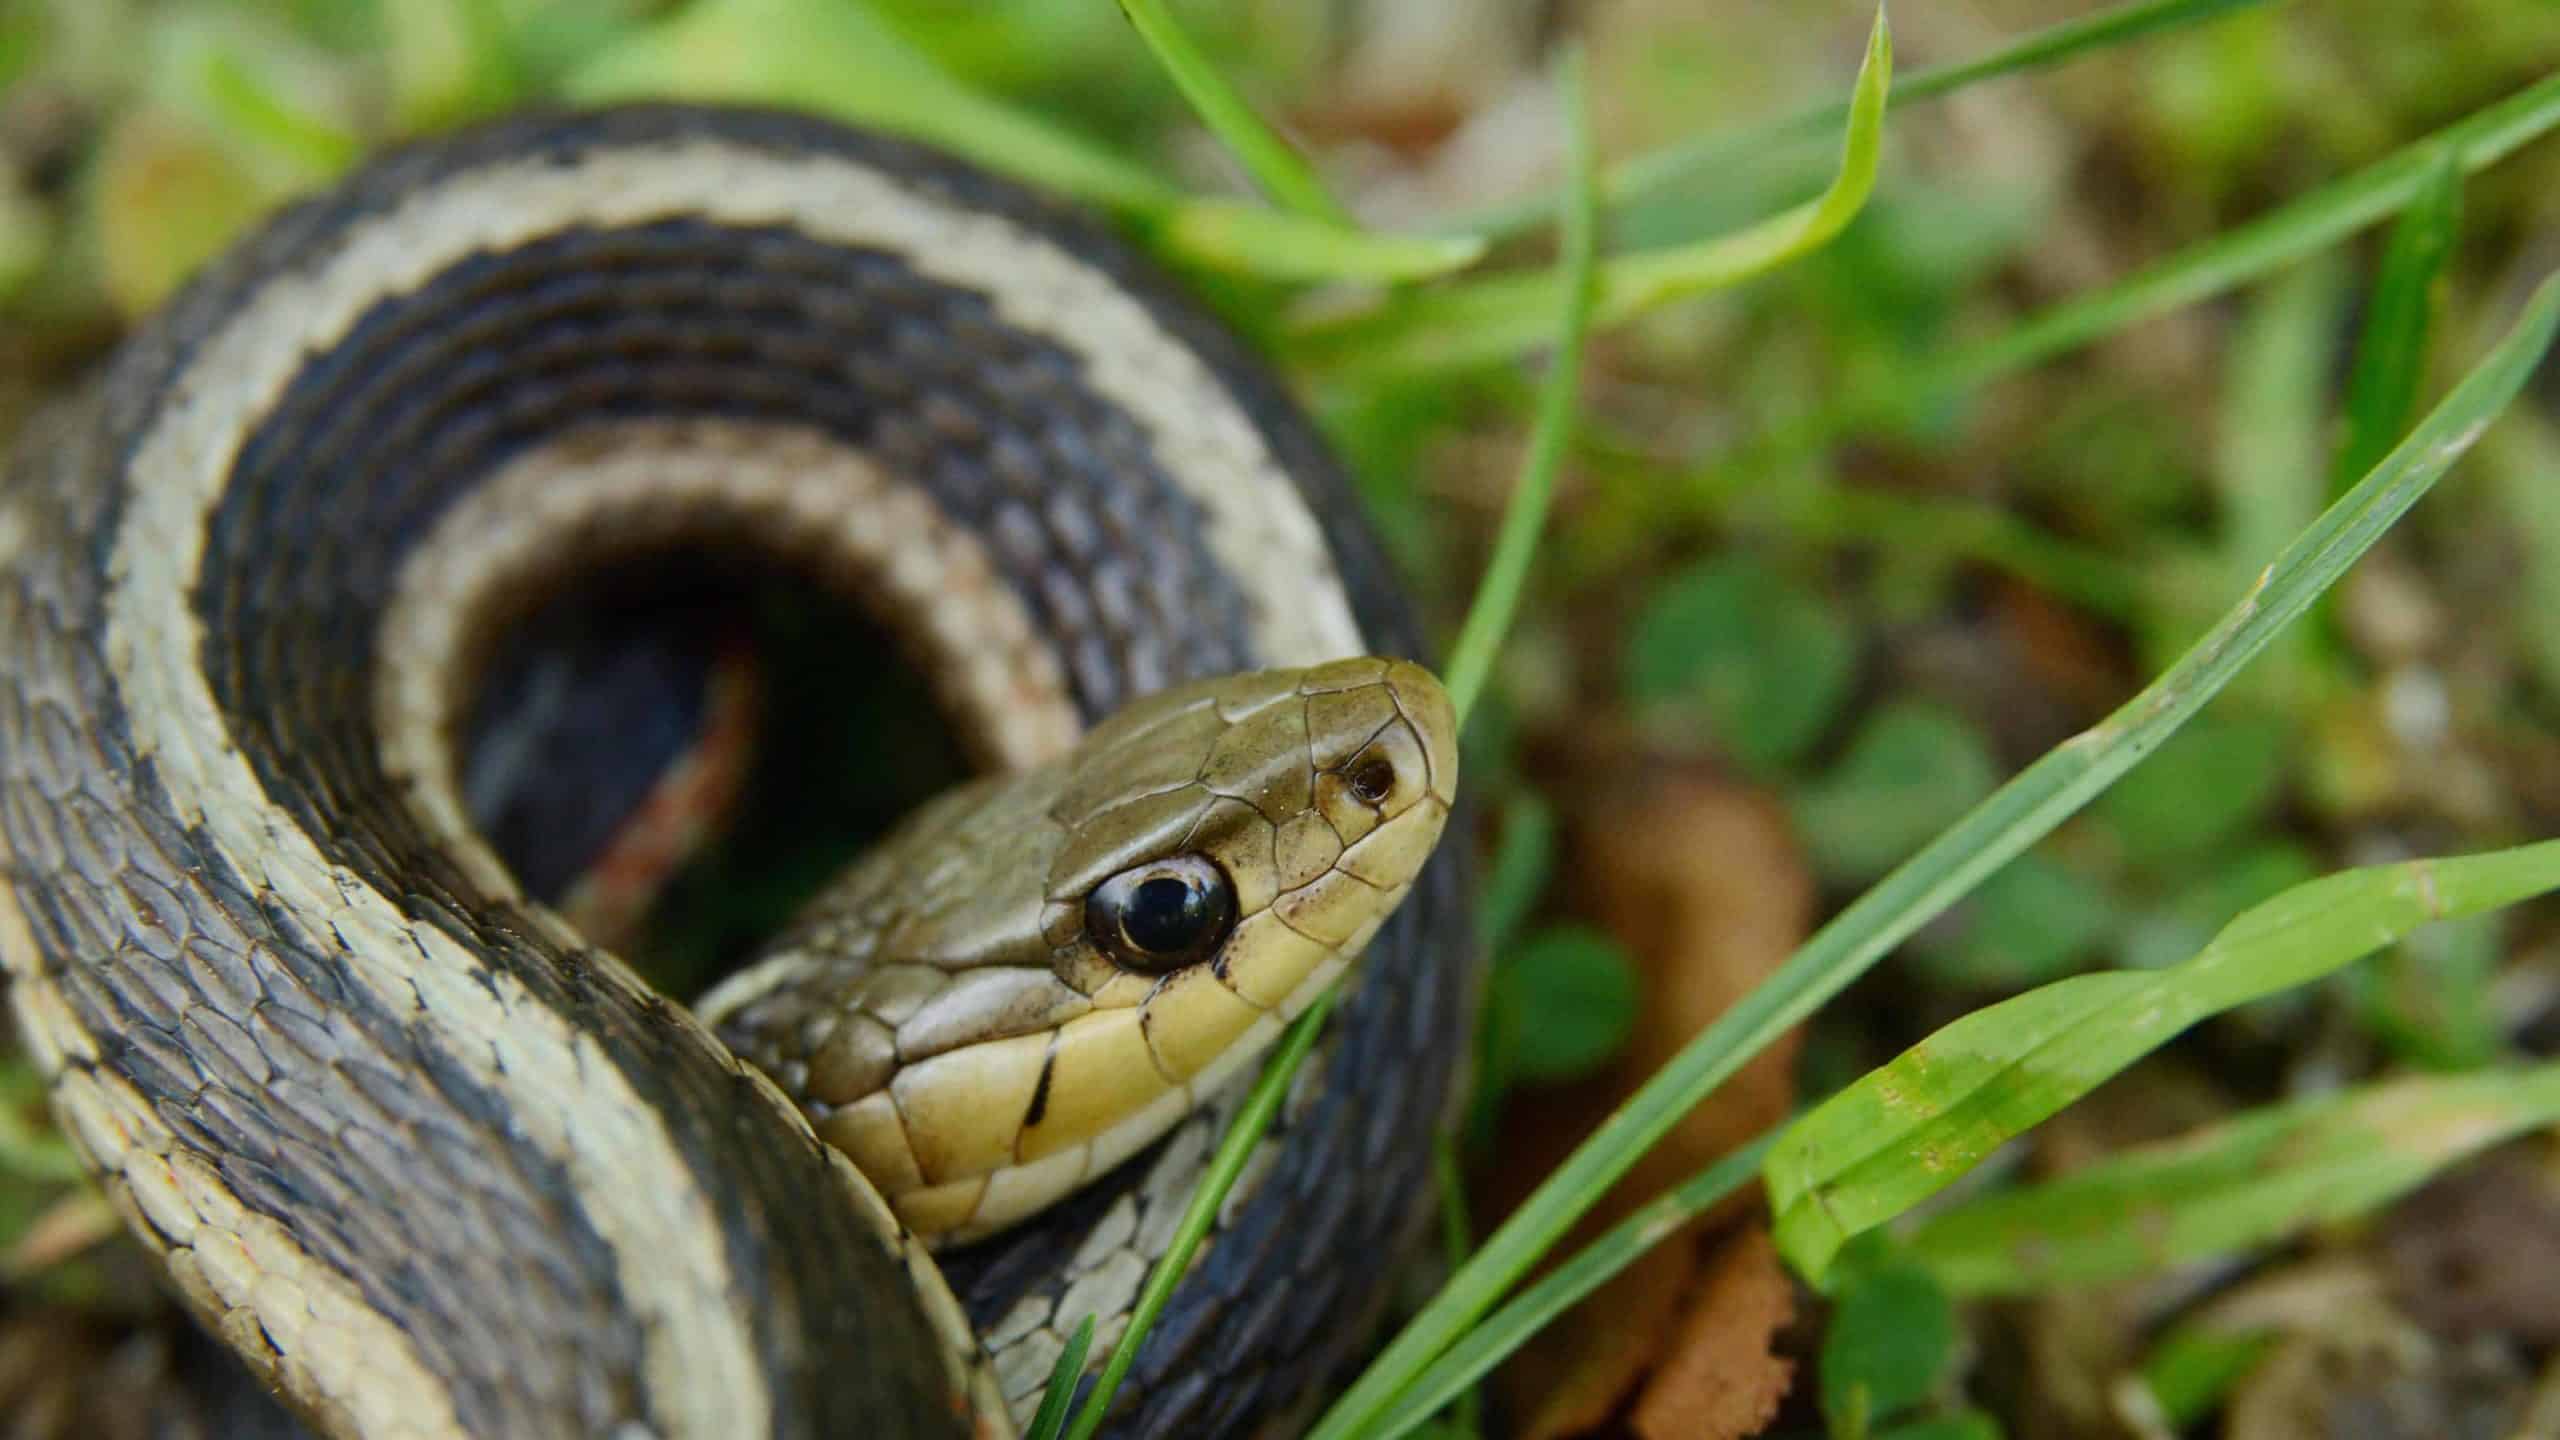 A garter snake coils in the grass.